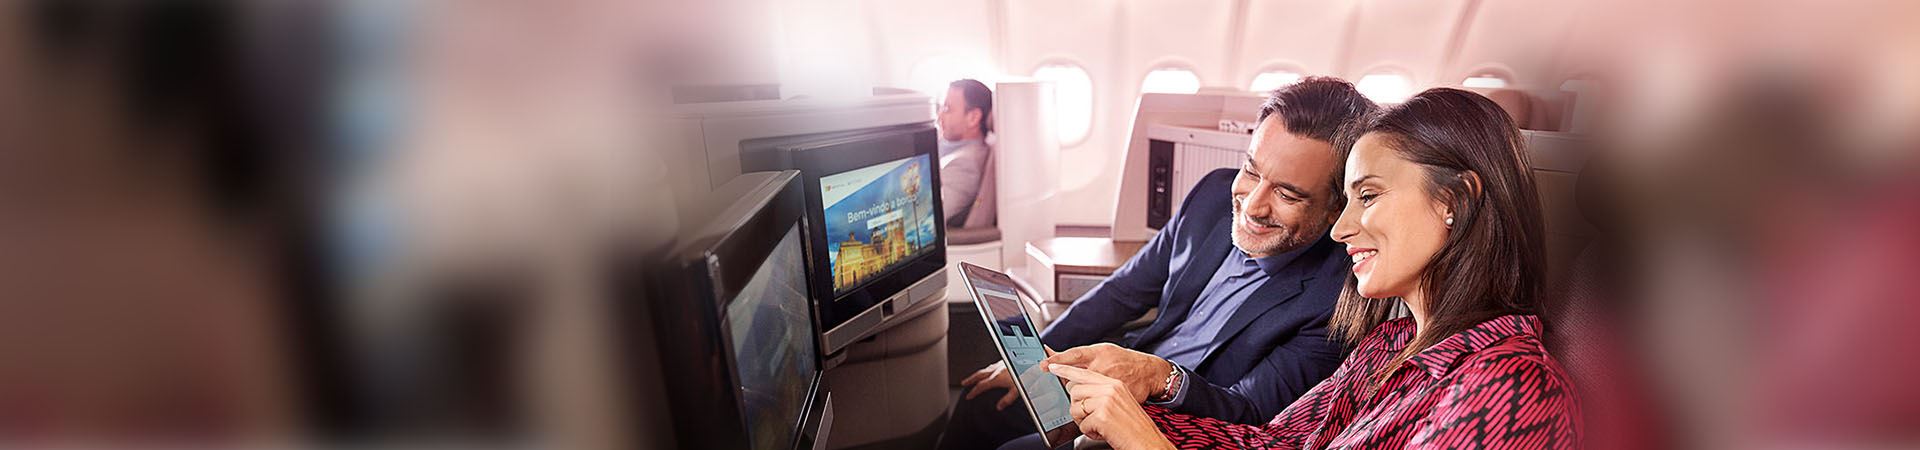 Primer plano de una mujer y un hombre sonrientes y sentados a bordo de un avión. La mujer sostiene una tableta y el hombre la mira. Ambos apuntan a la pantalla de la tableta. En frente, hay dos pantallas integradas en los asientos del avión.